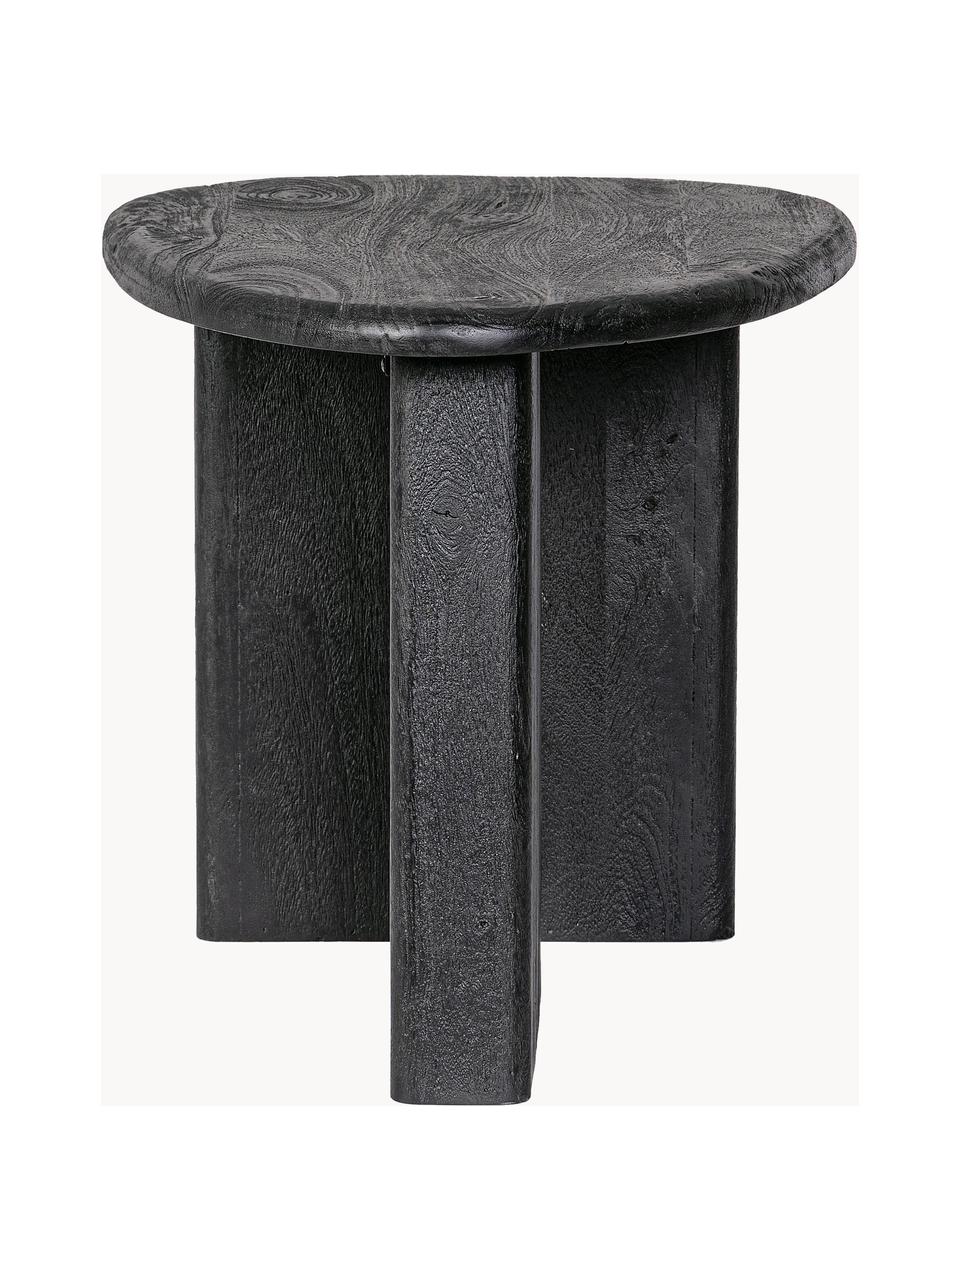 Oválný konferenční stolek z mangového dřeva Zacatecas, Mangové dřevo, Mangové dřevo, lakované černou barvou, Š 60 cm, H 45 cm